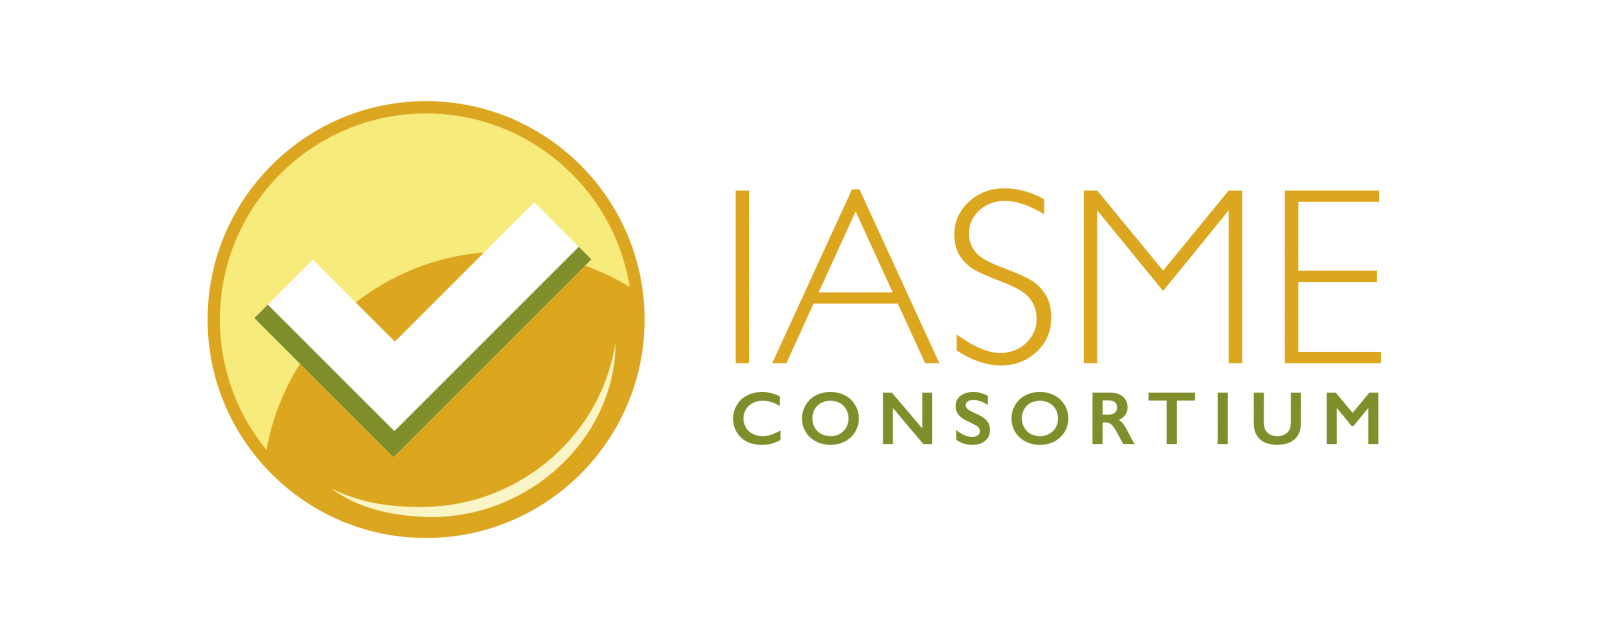 IASME Consortium